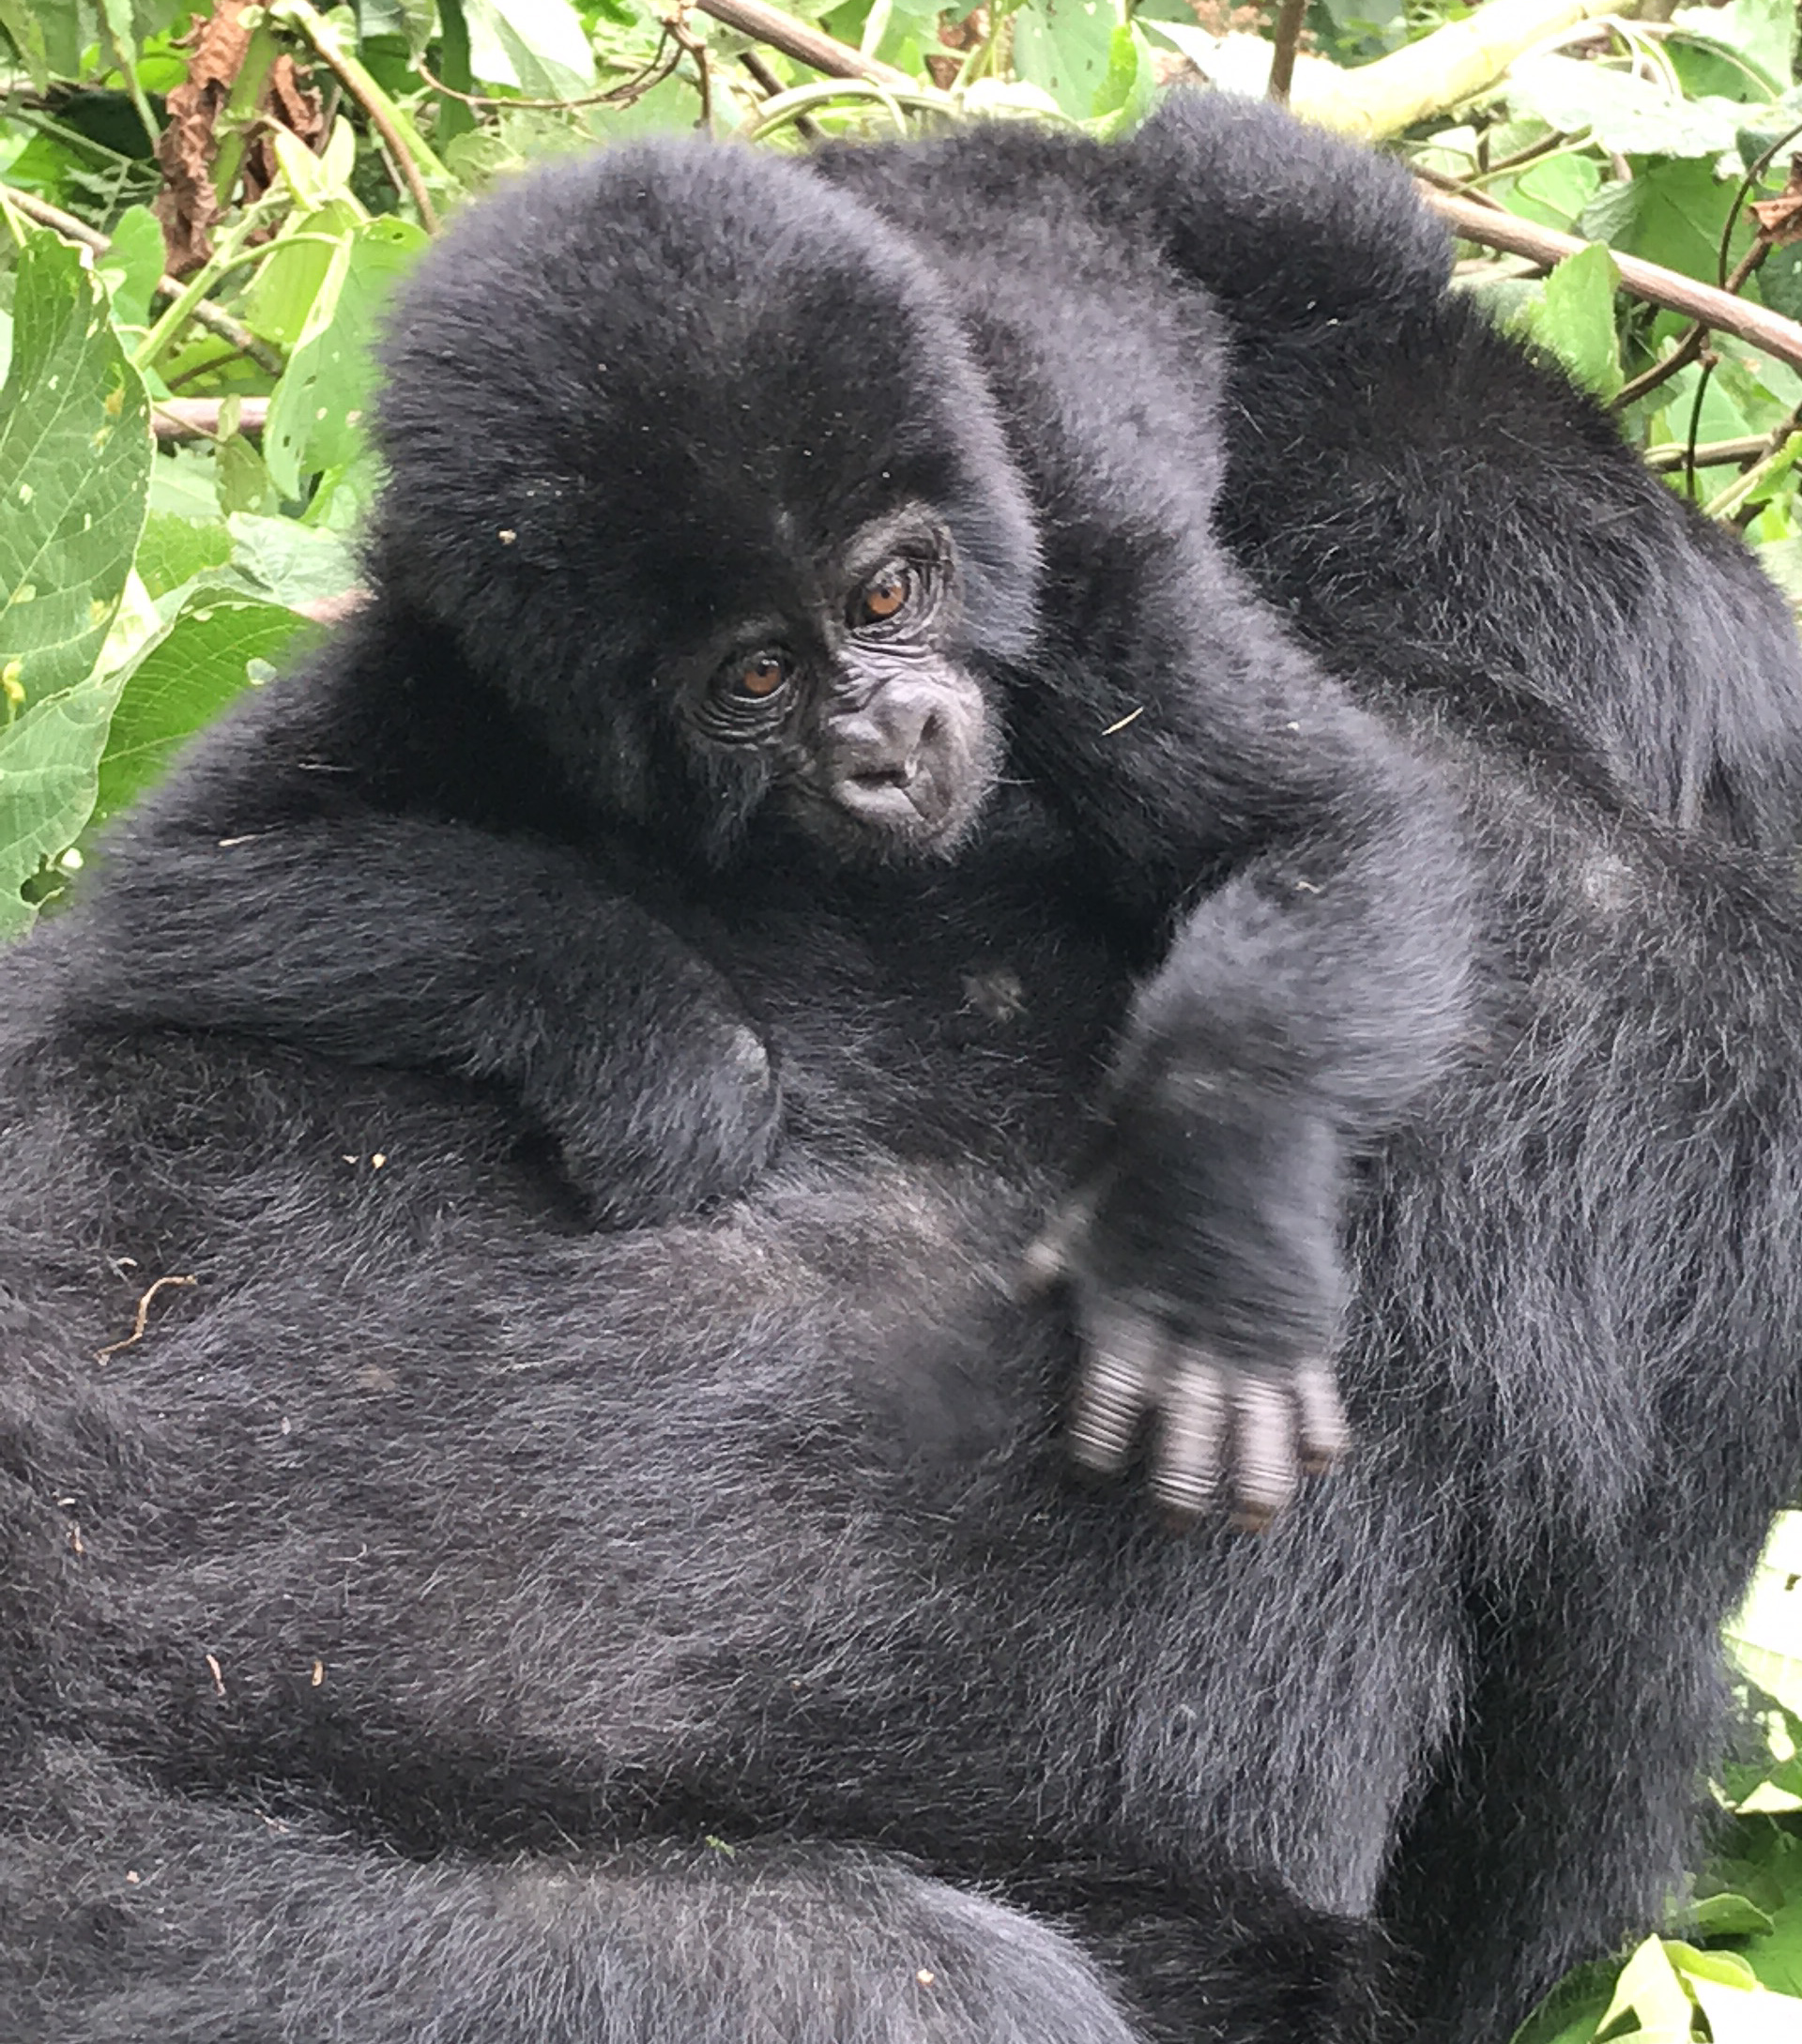 Finalmente fui a caminar por gorila en Uganda y valió la pena la espera - 9